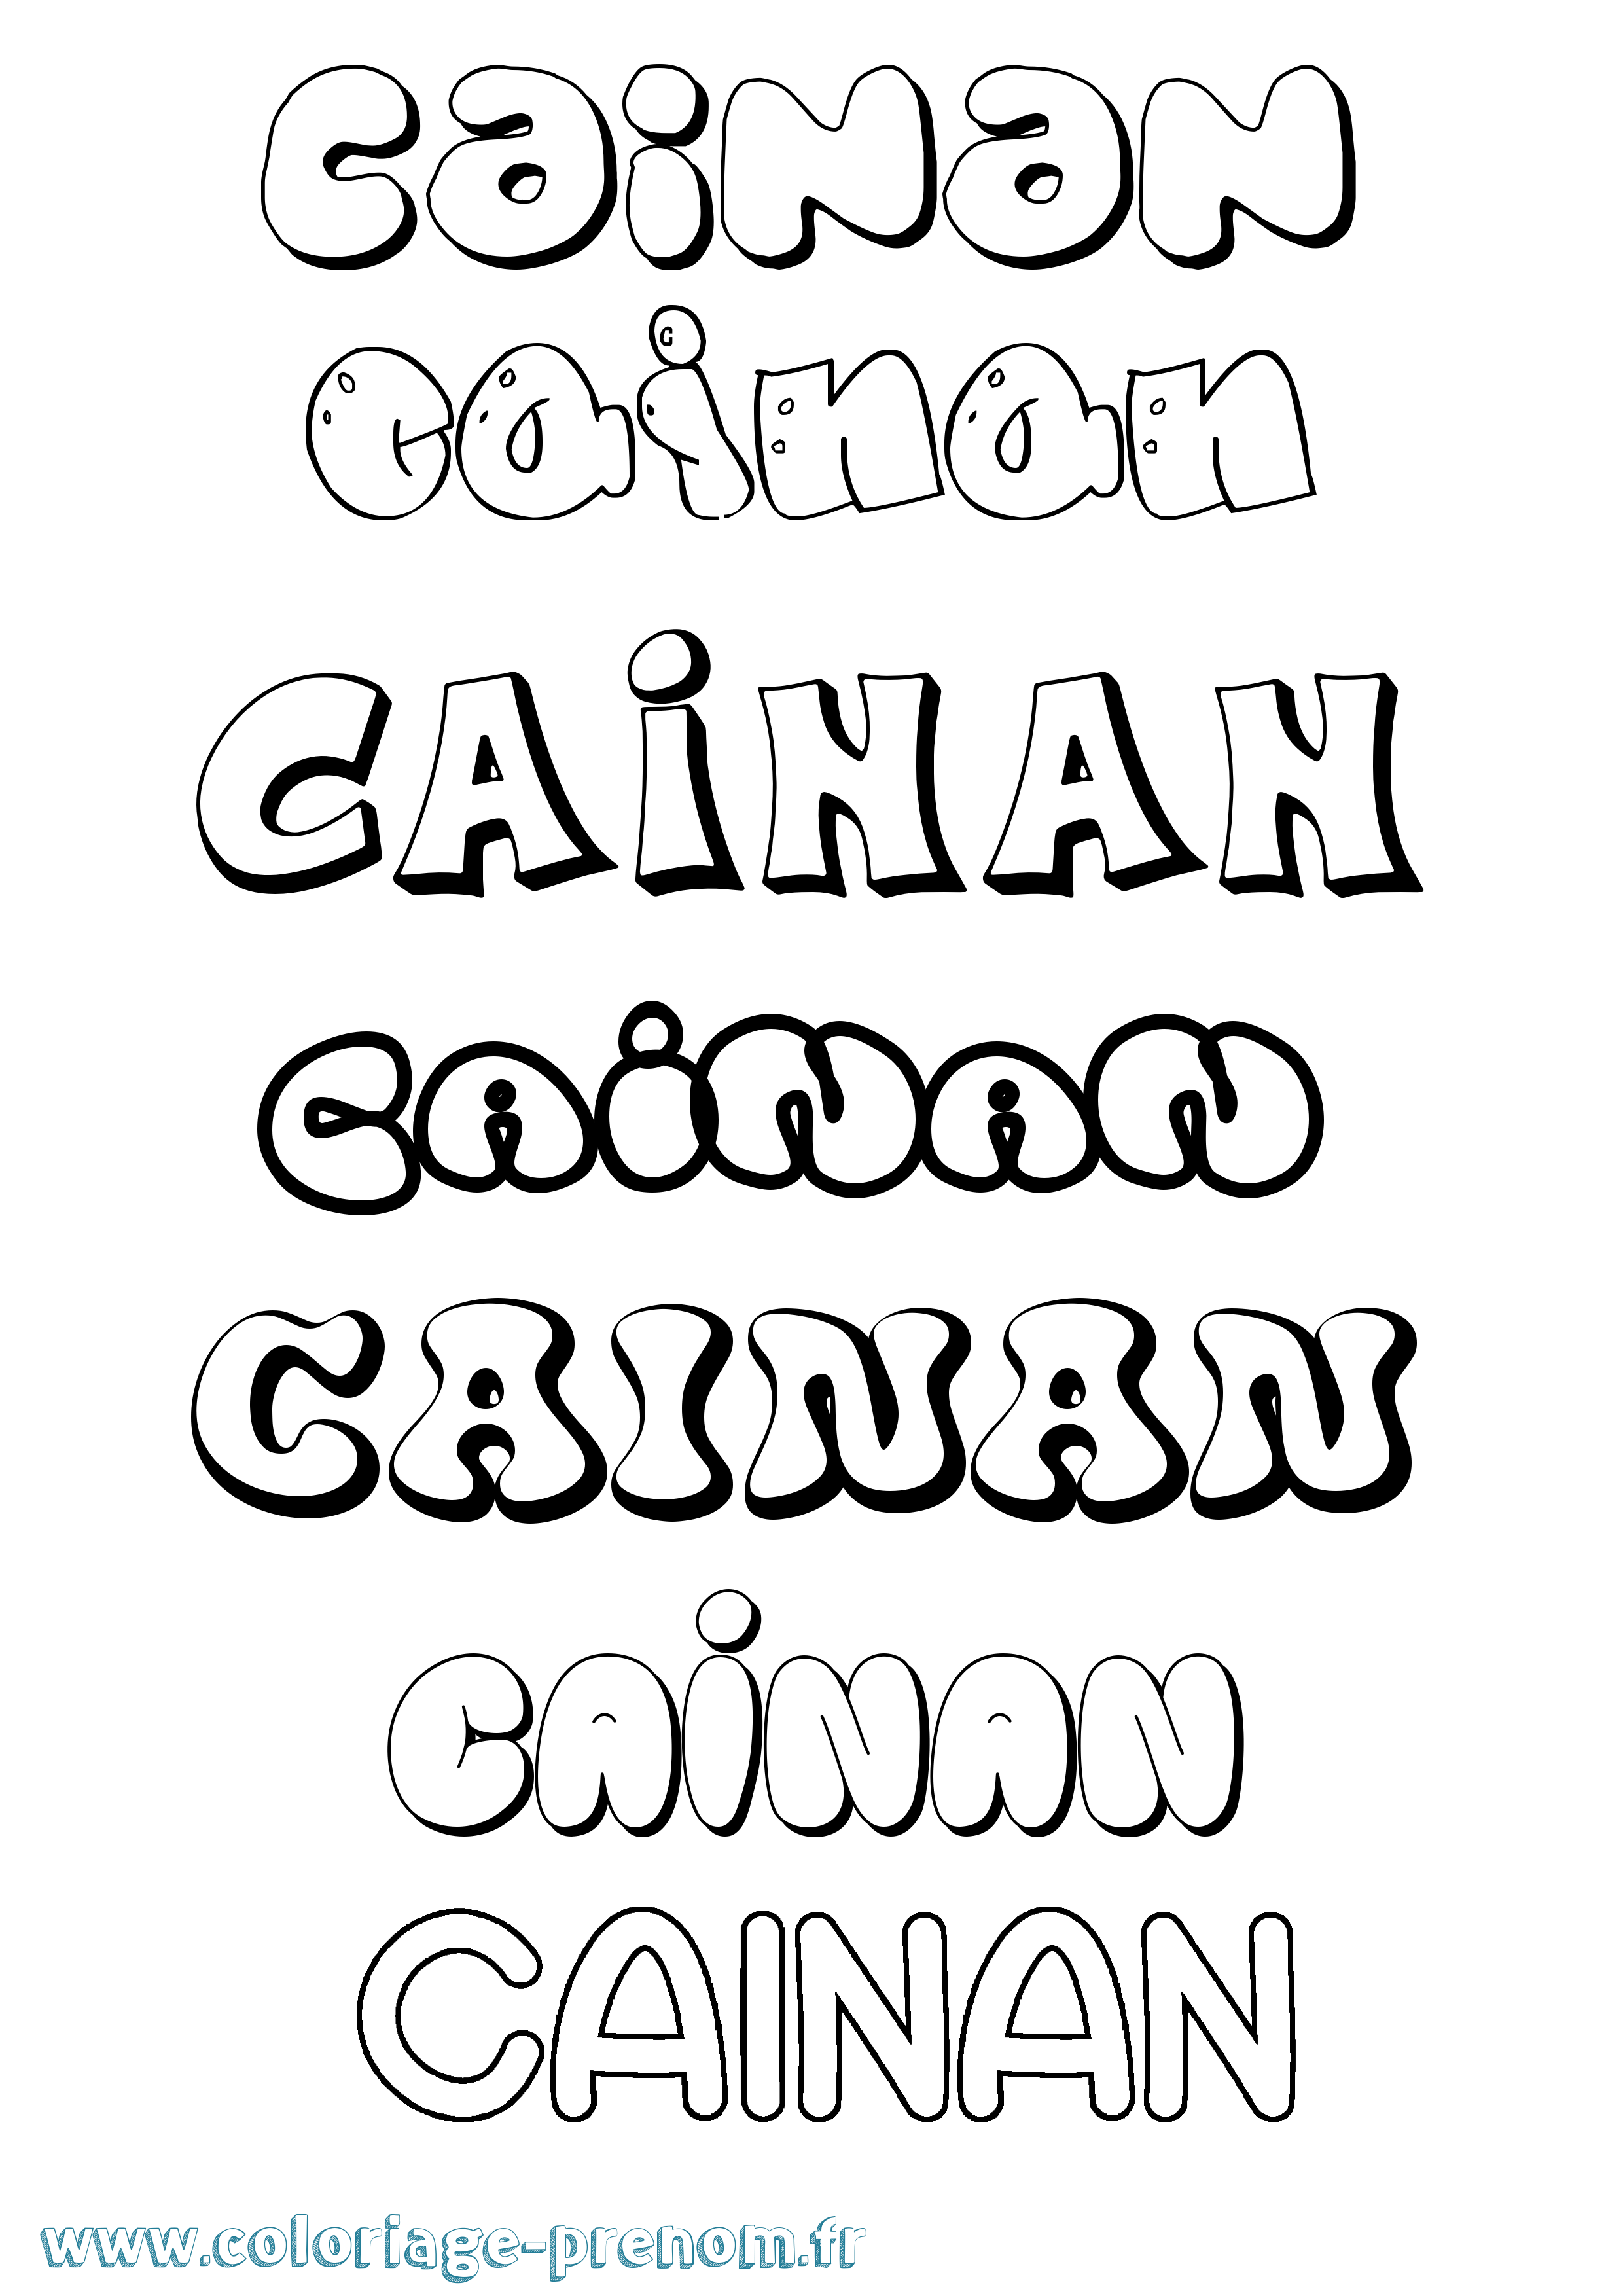 Coloriage prénom Cainan Bubble